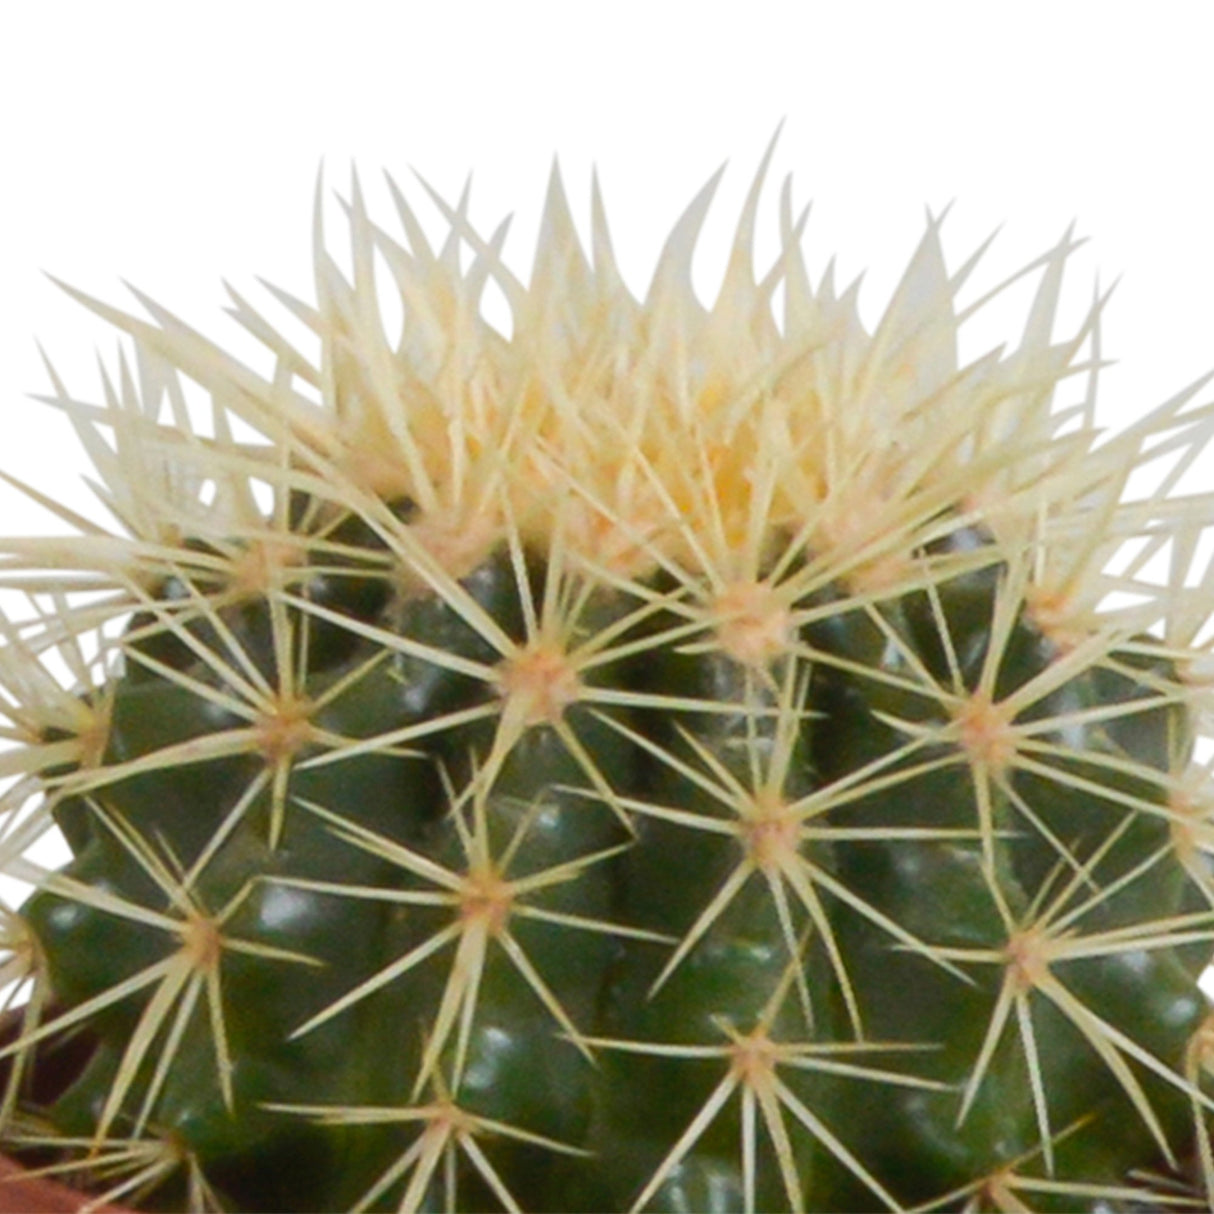 Livraison plante Coffret cactus et ses caches - pots blancs - Lot de 3 plantes, h23cm